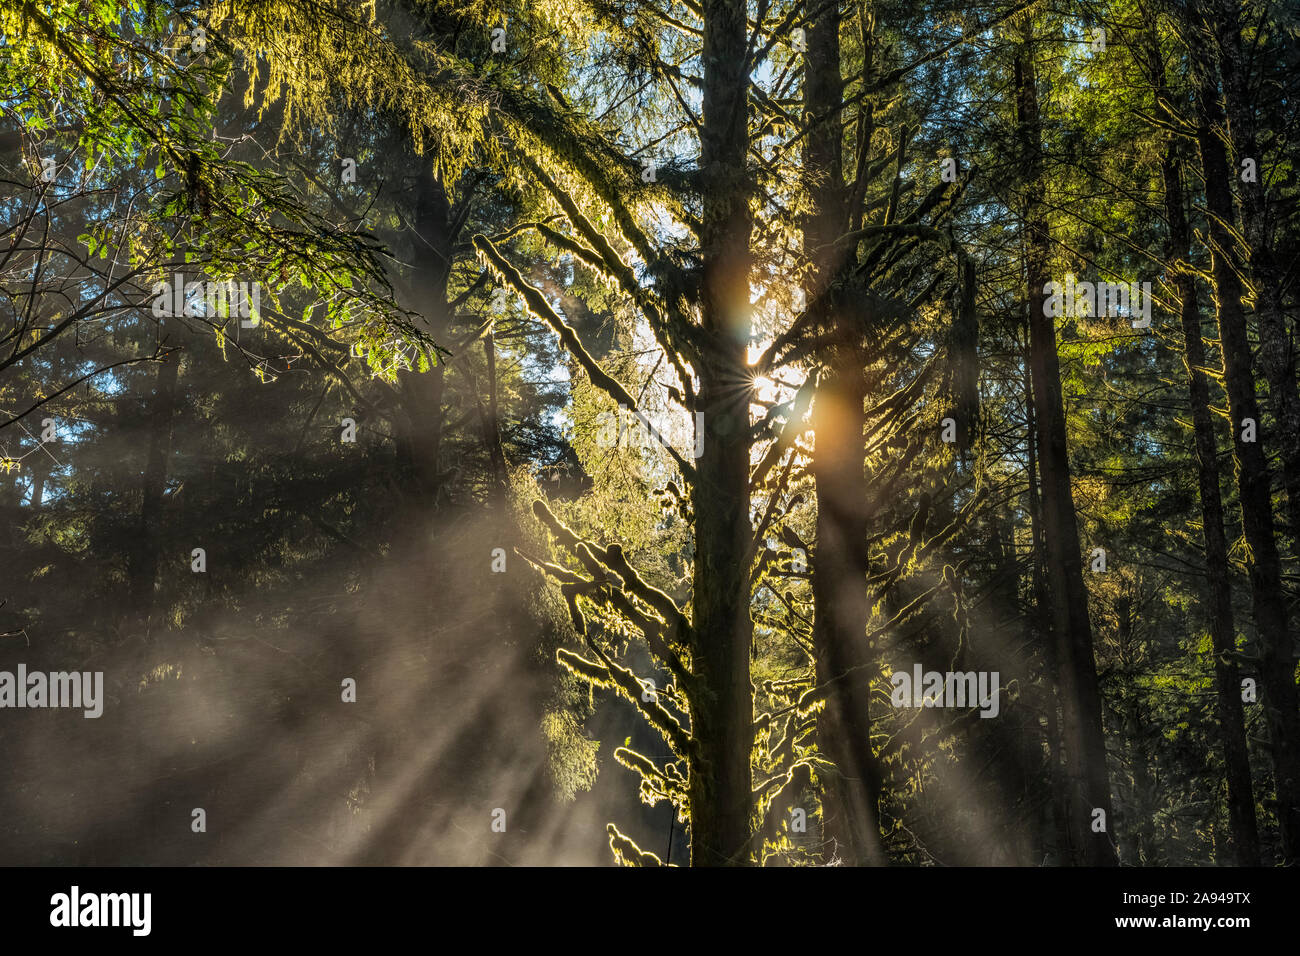 Steht in den Redwood-Wäldern von Nordkalifornien. Die Bäume sind massiv und reichen nach oben. Lichtfilterung durch die Bäume und Nebel schaffen B... Stockfoto